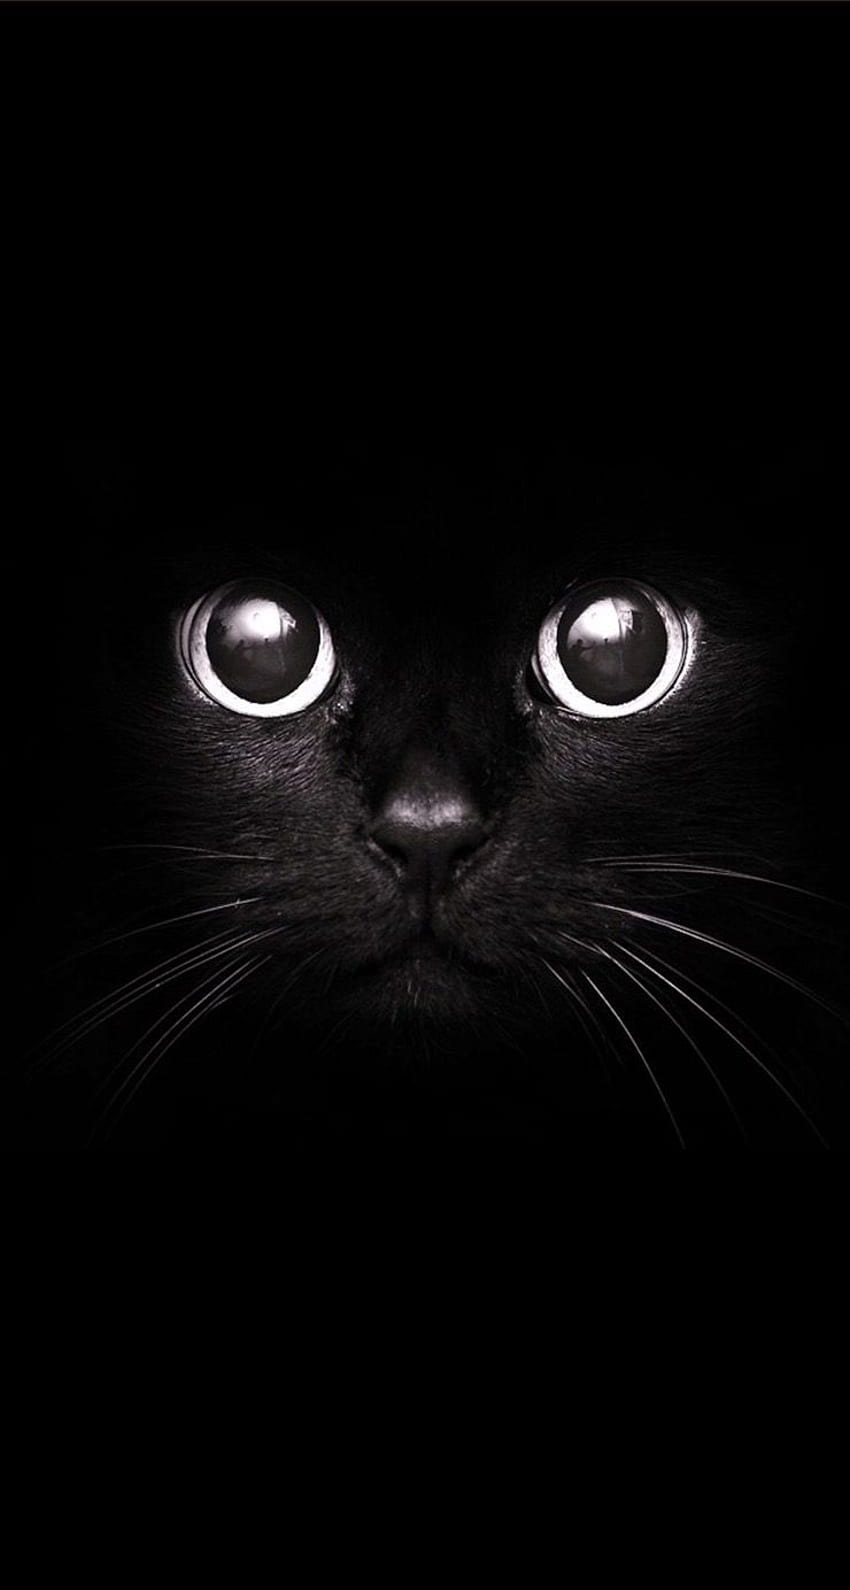 Hình nền mèo đen đáng yêu 3D cho iPhone: Bạn là một người yêu thích động vật và đang tìm kiếm một hình nền độc đáo cho iPhone của mình? Không thể bỏ qua bộ sưu tập hình nền với chủ đề \